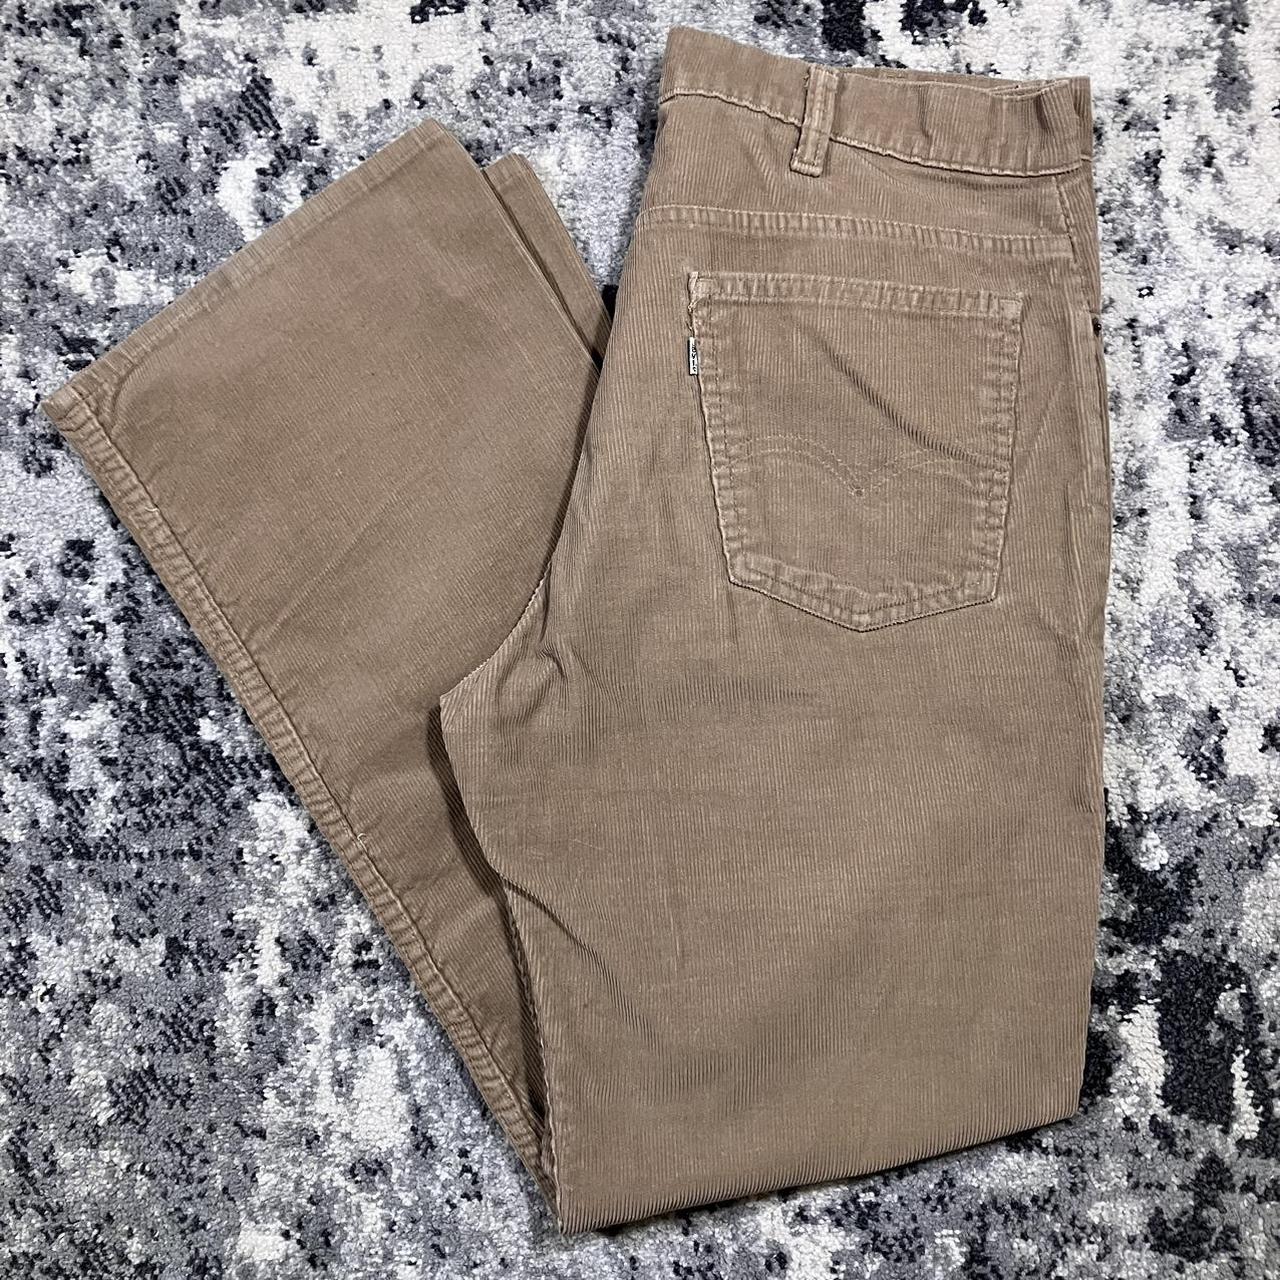 Vintage 80s Levi’s Tan Corduroy Pants 🏷️ Size... - Depop